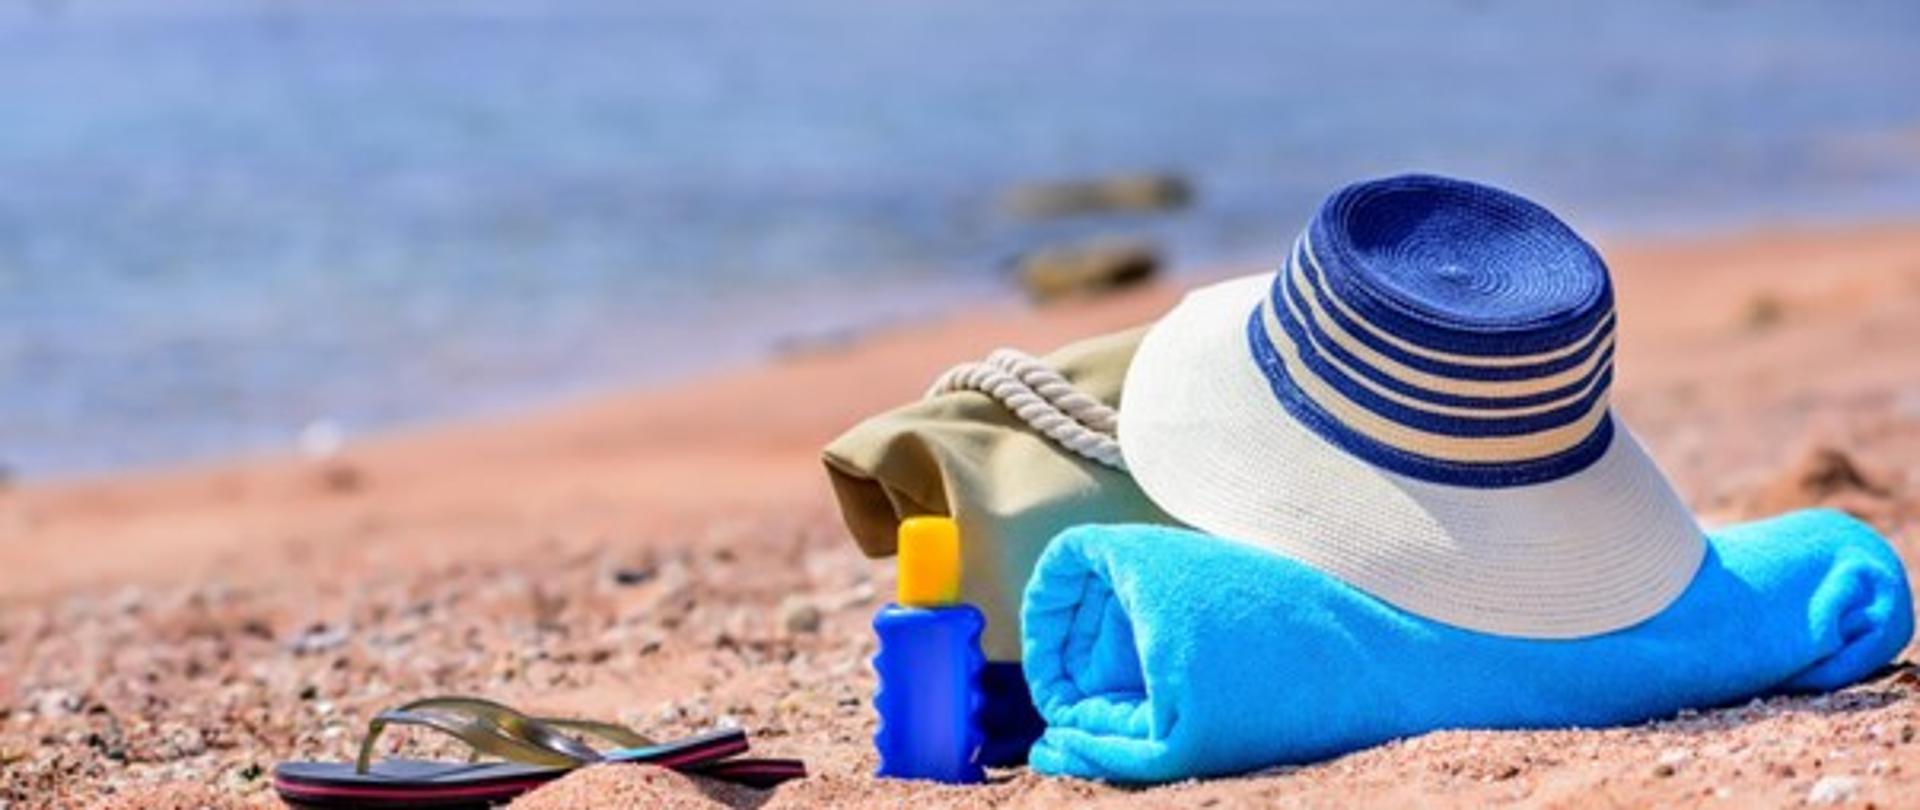 Na piasku nad morzem ułożony jest niebiesko-biały kapelusz, ręcznik oraz krem do opalania.